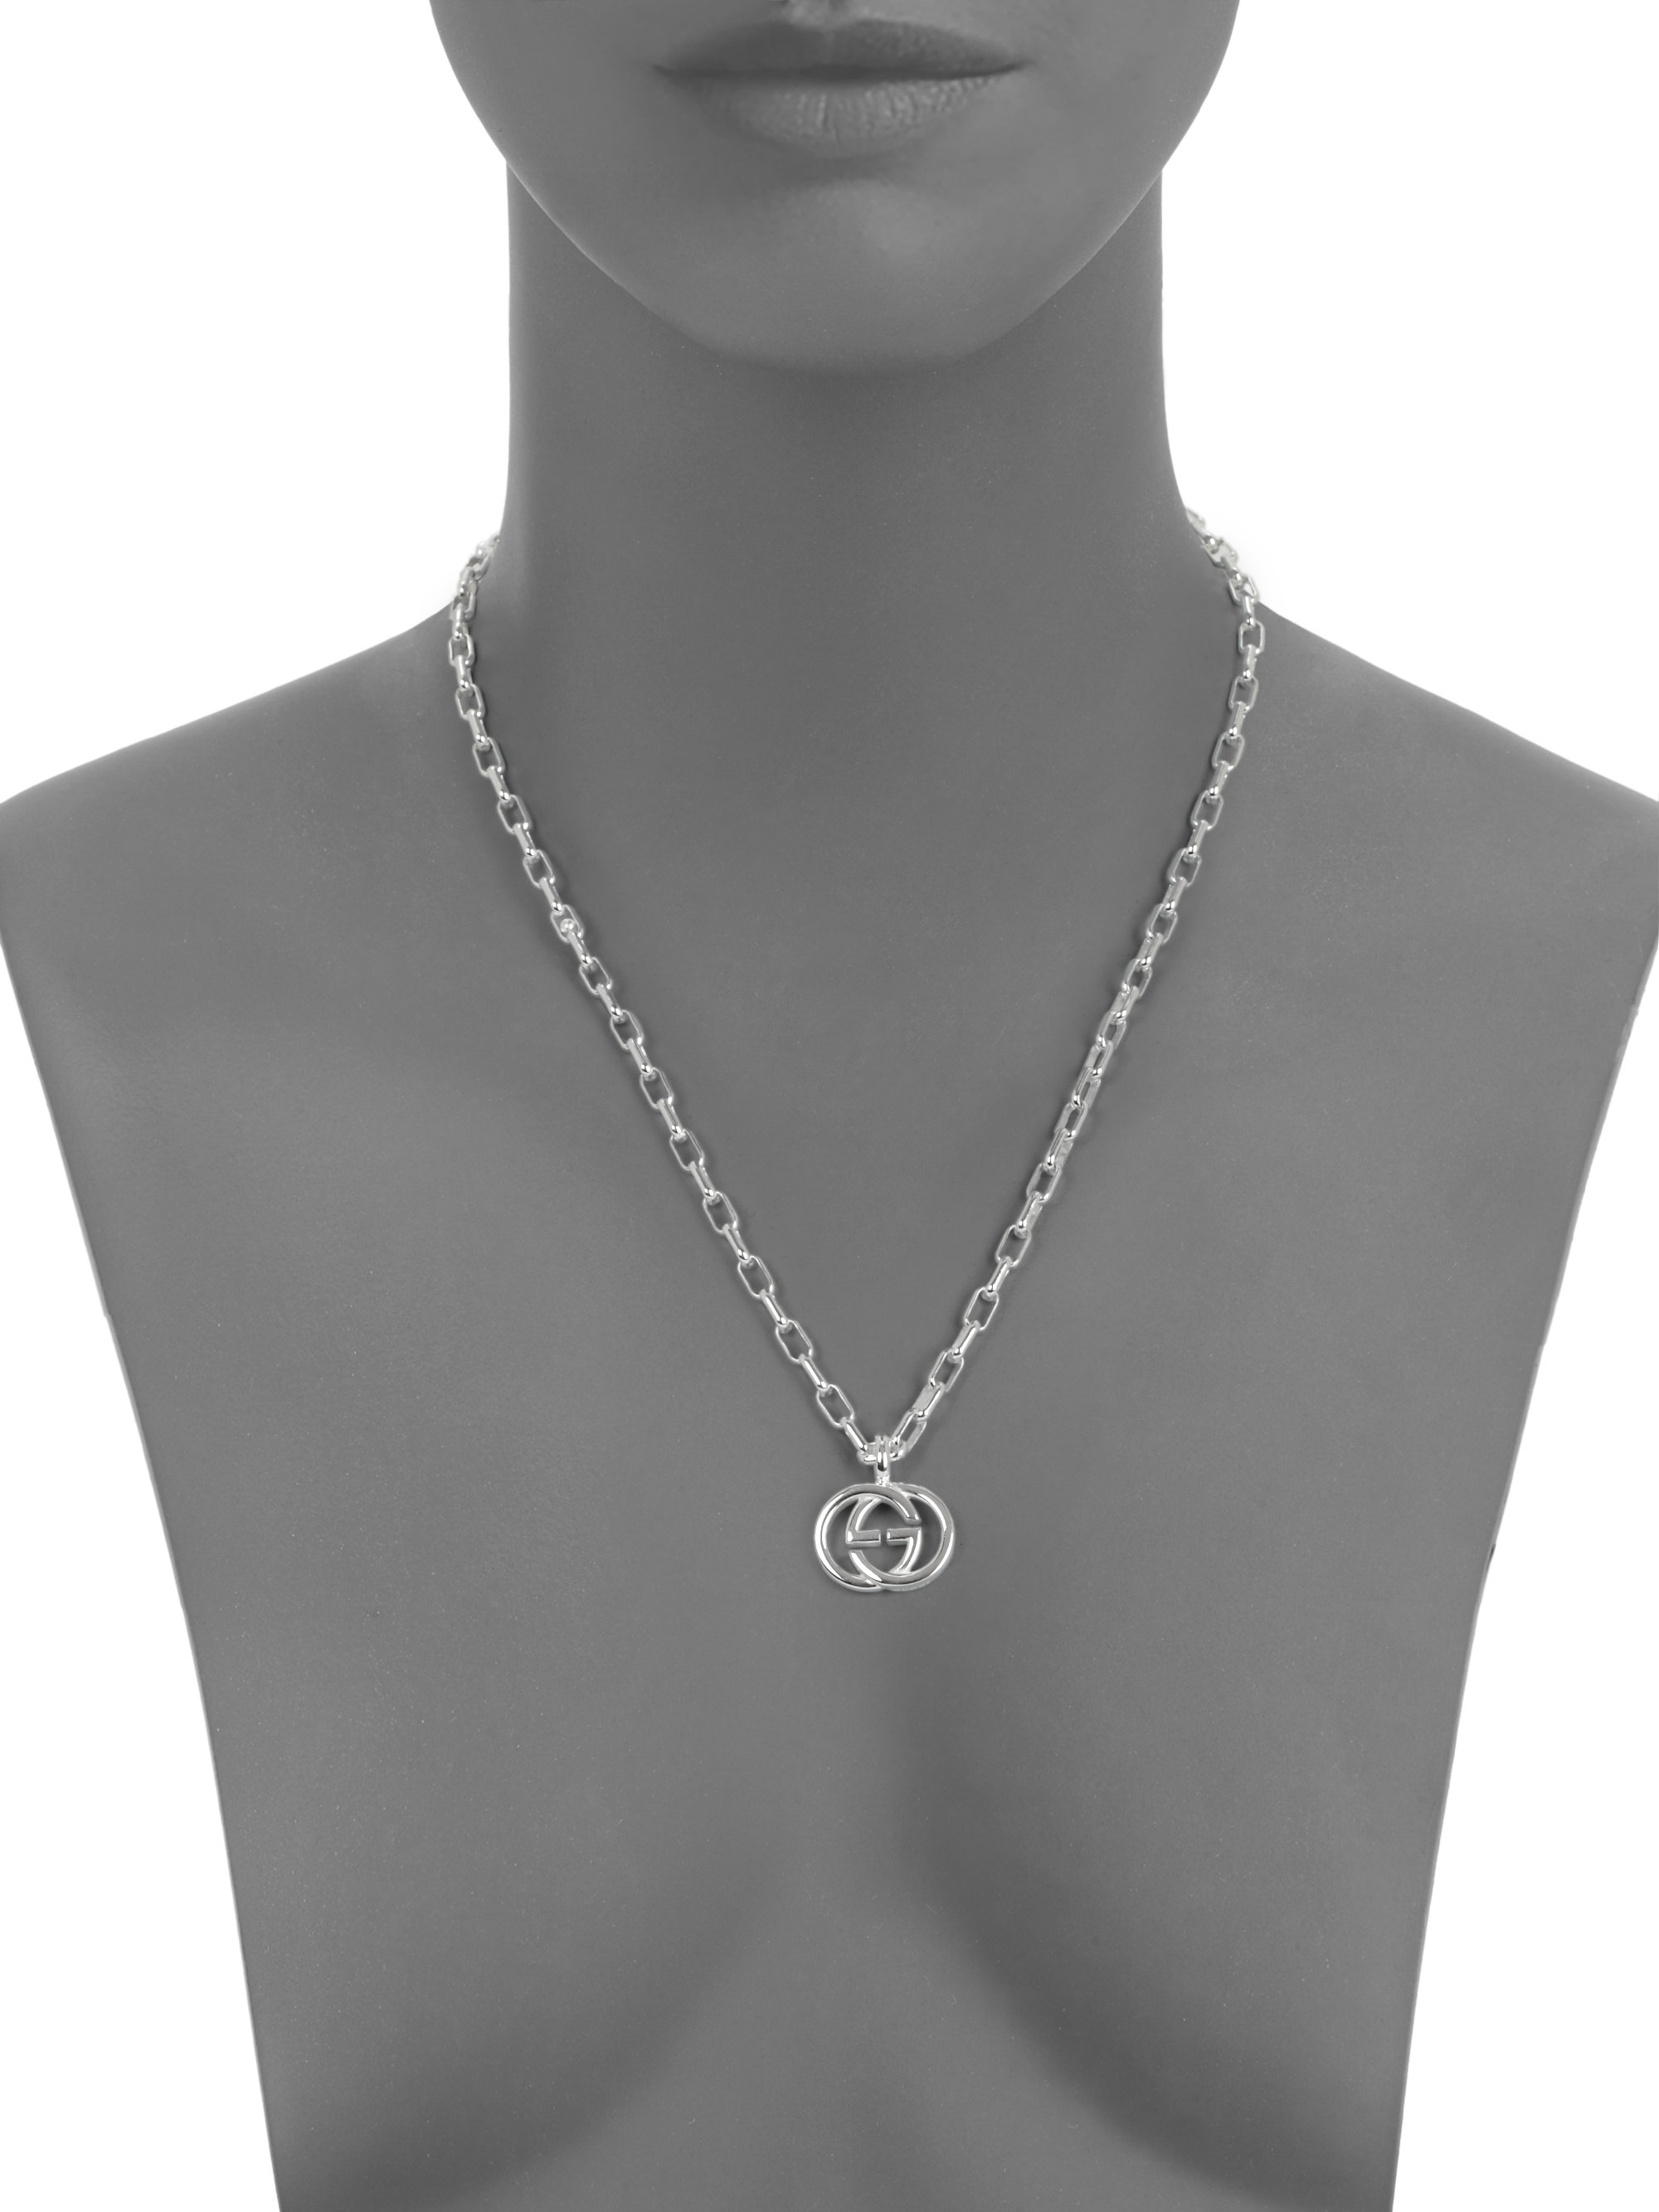 interlocking g necklace in silver